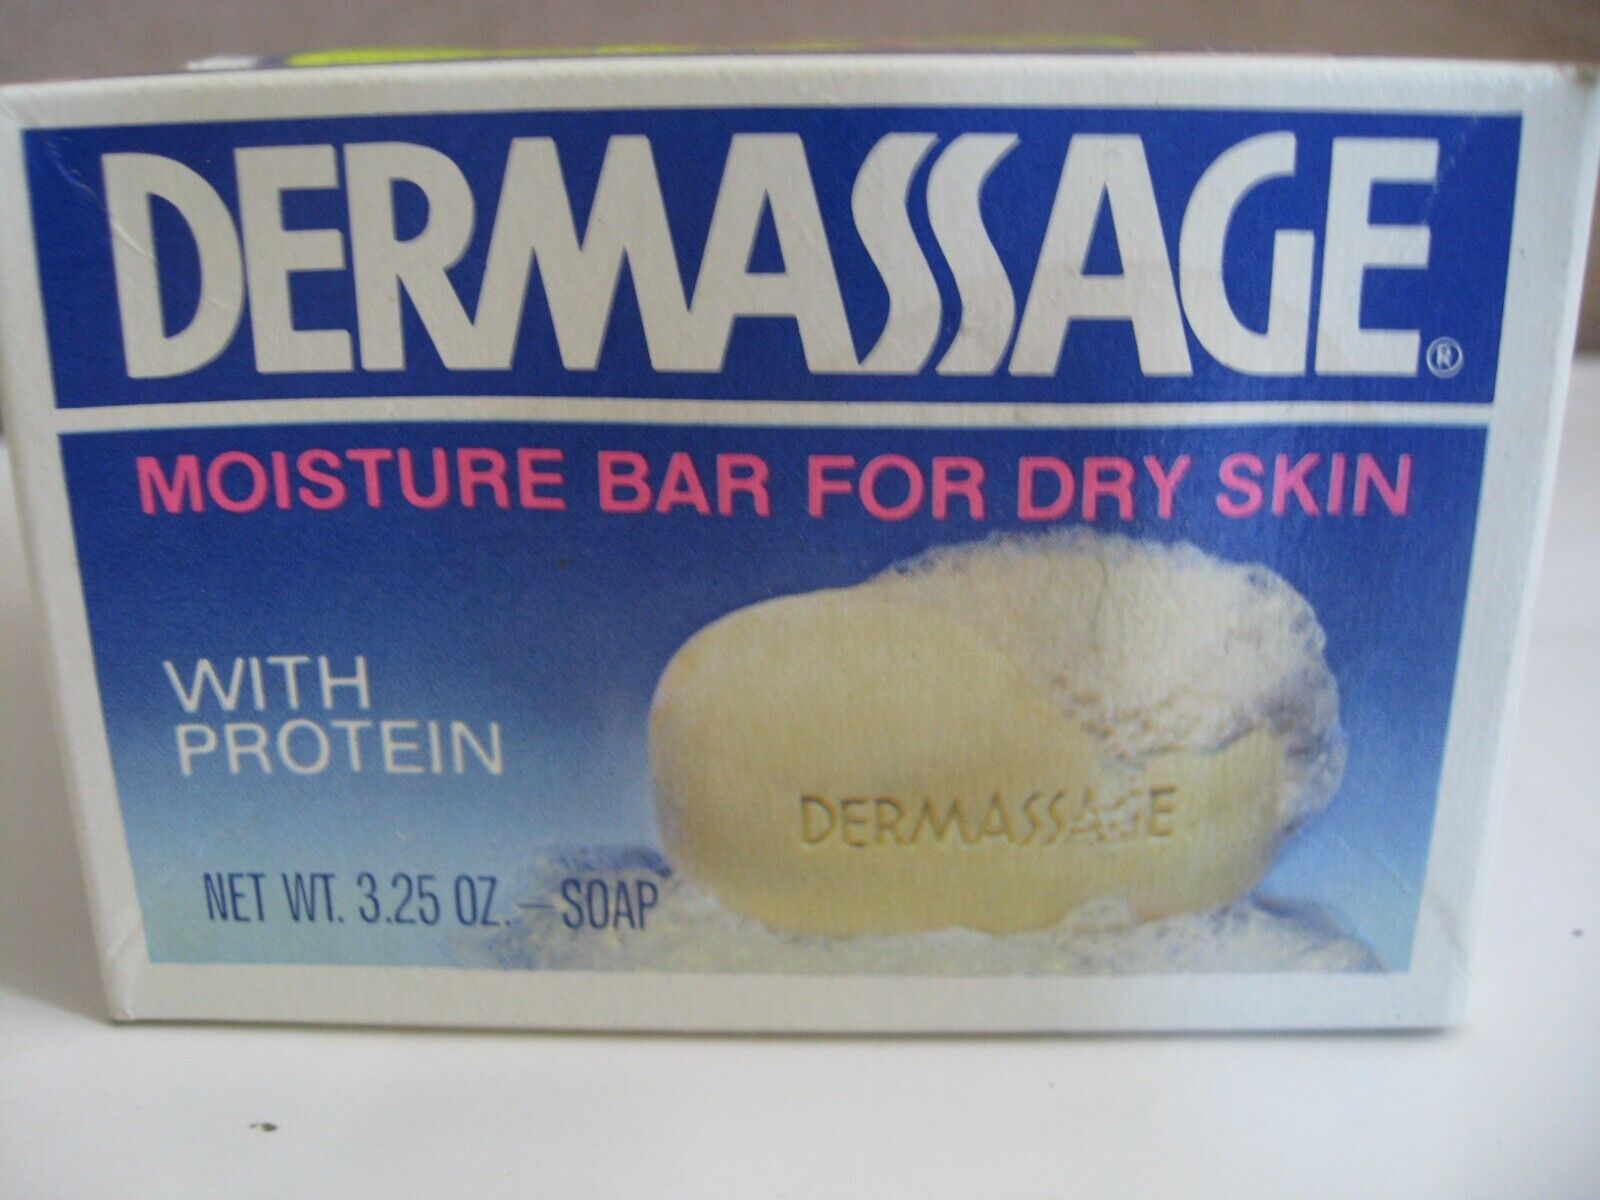 Colgate DERMASSAGE Moisture Bar Dry Skin Soap 1970 Prop NOS 2 Pack Vintage